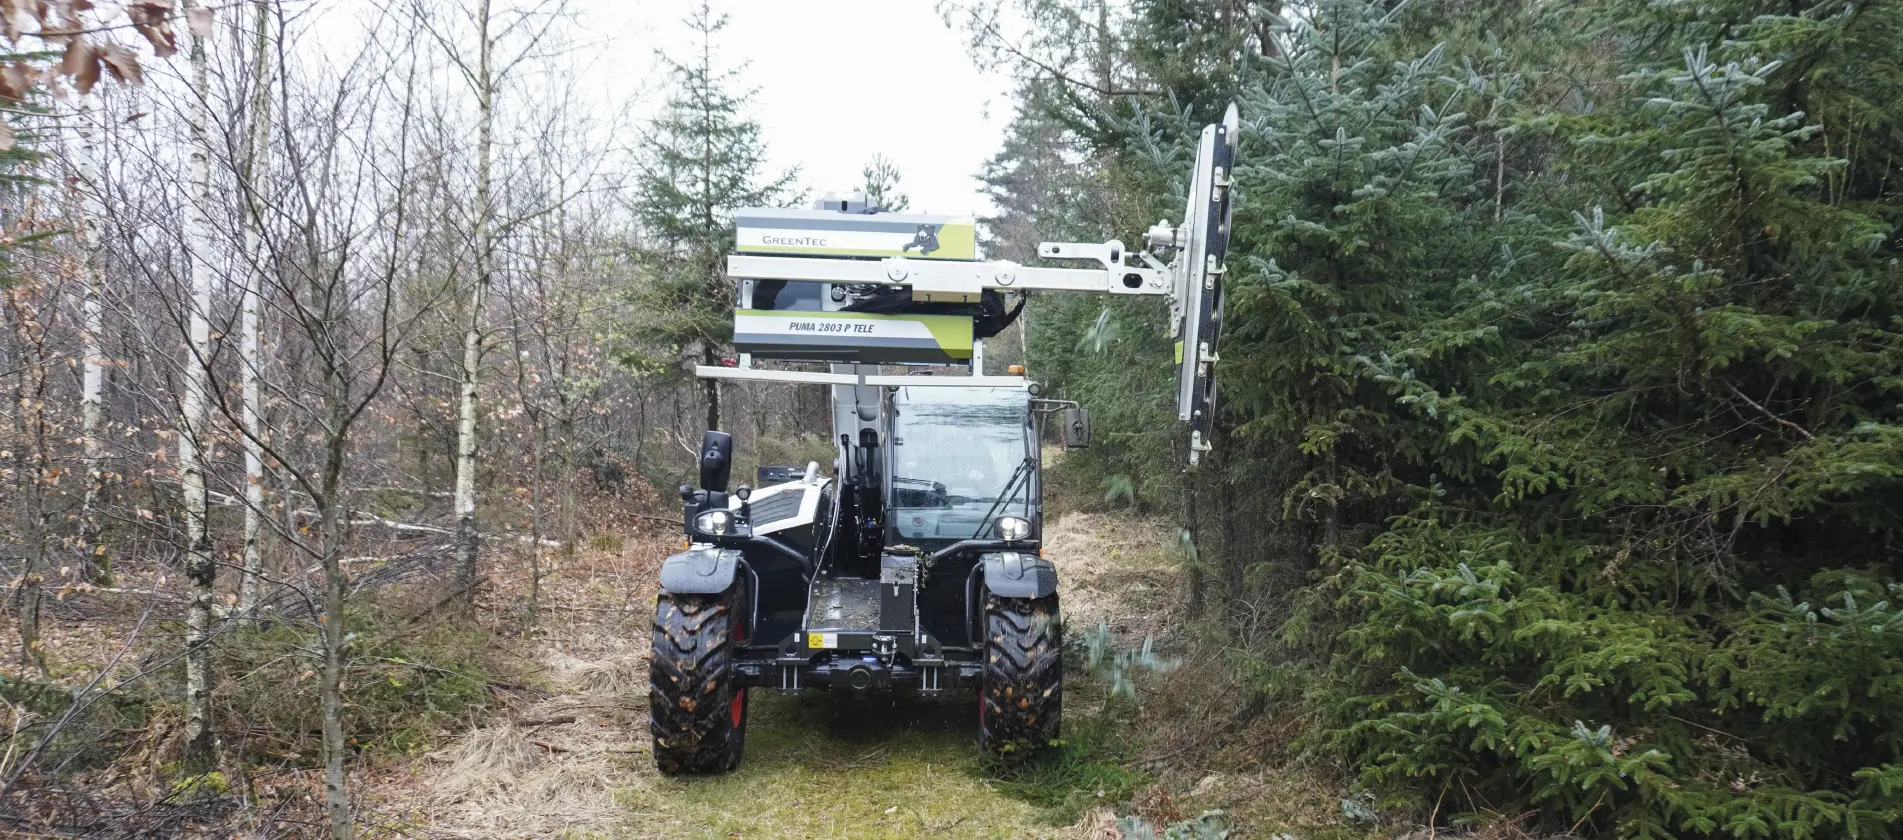 Træbeskæring i skov med GreenTec maskiner